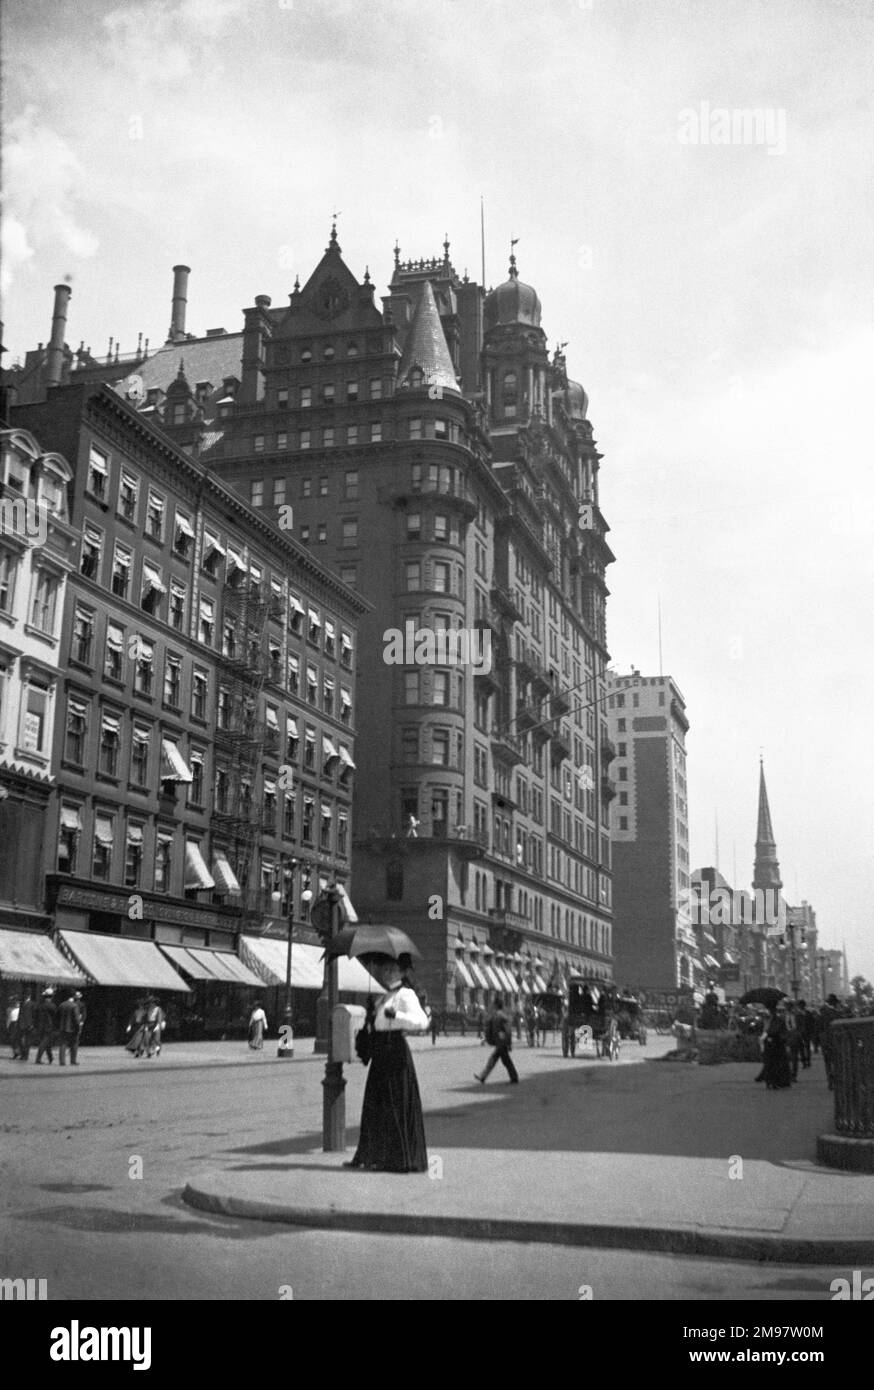 Das ursprüngliche Waldorf Astoria wurde auf der 5. Avenue, New York, erbaut - entworfen von Henry J. Hardenbergh und fertiggestellt im Jahr 1893. 1929 wurde es abgerissen, um Platz für den Bau der Empire State Building zu schaffen. Stockfoto